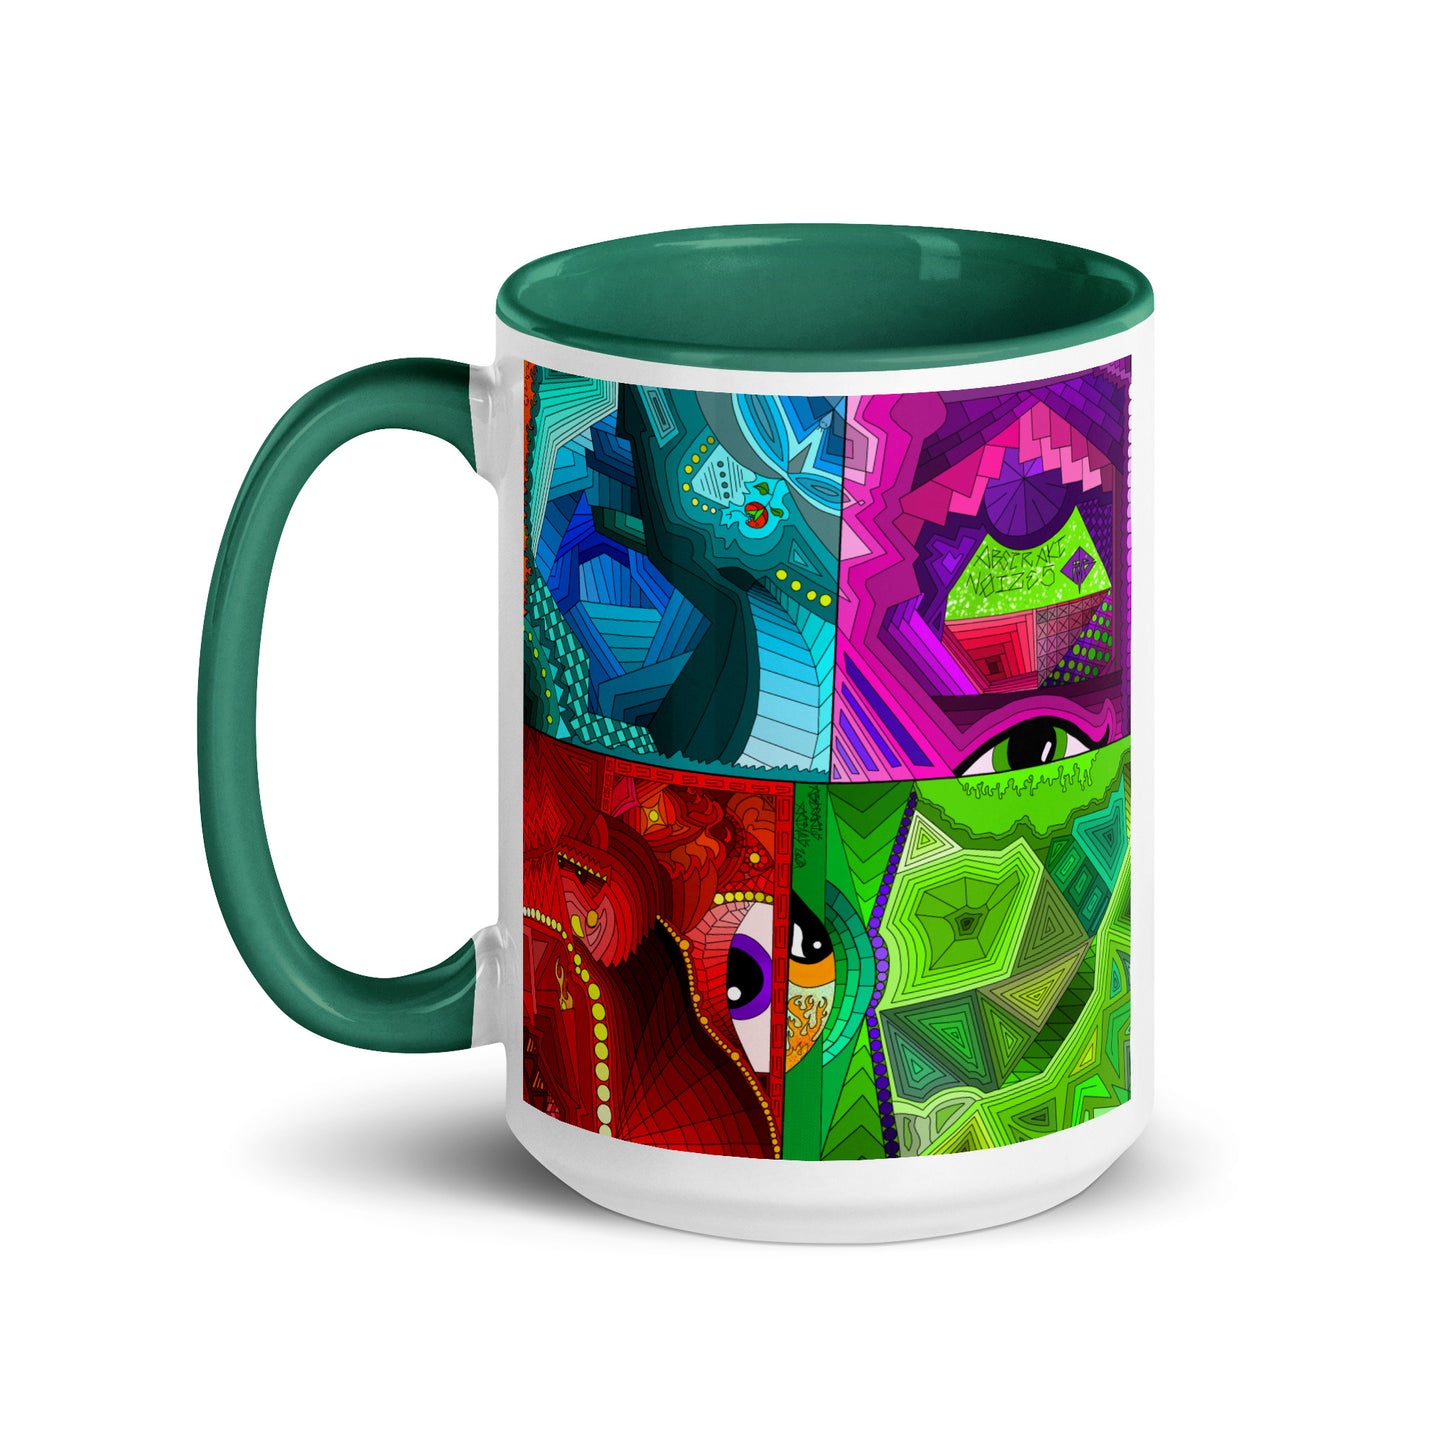 Abstraktius Artimus - Abstrakt Noize 5 Mug With Color Inside